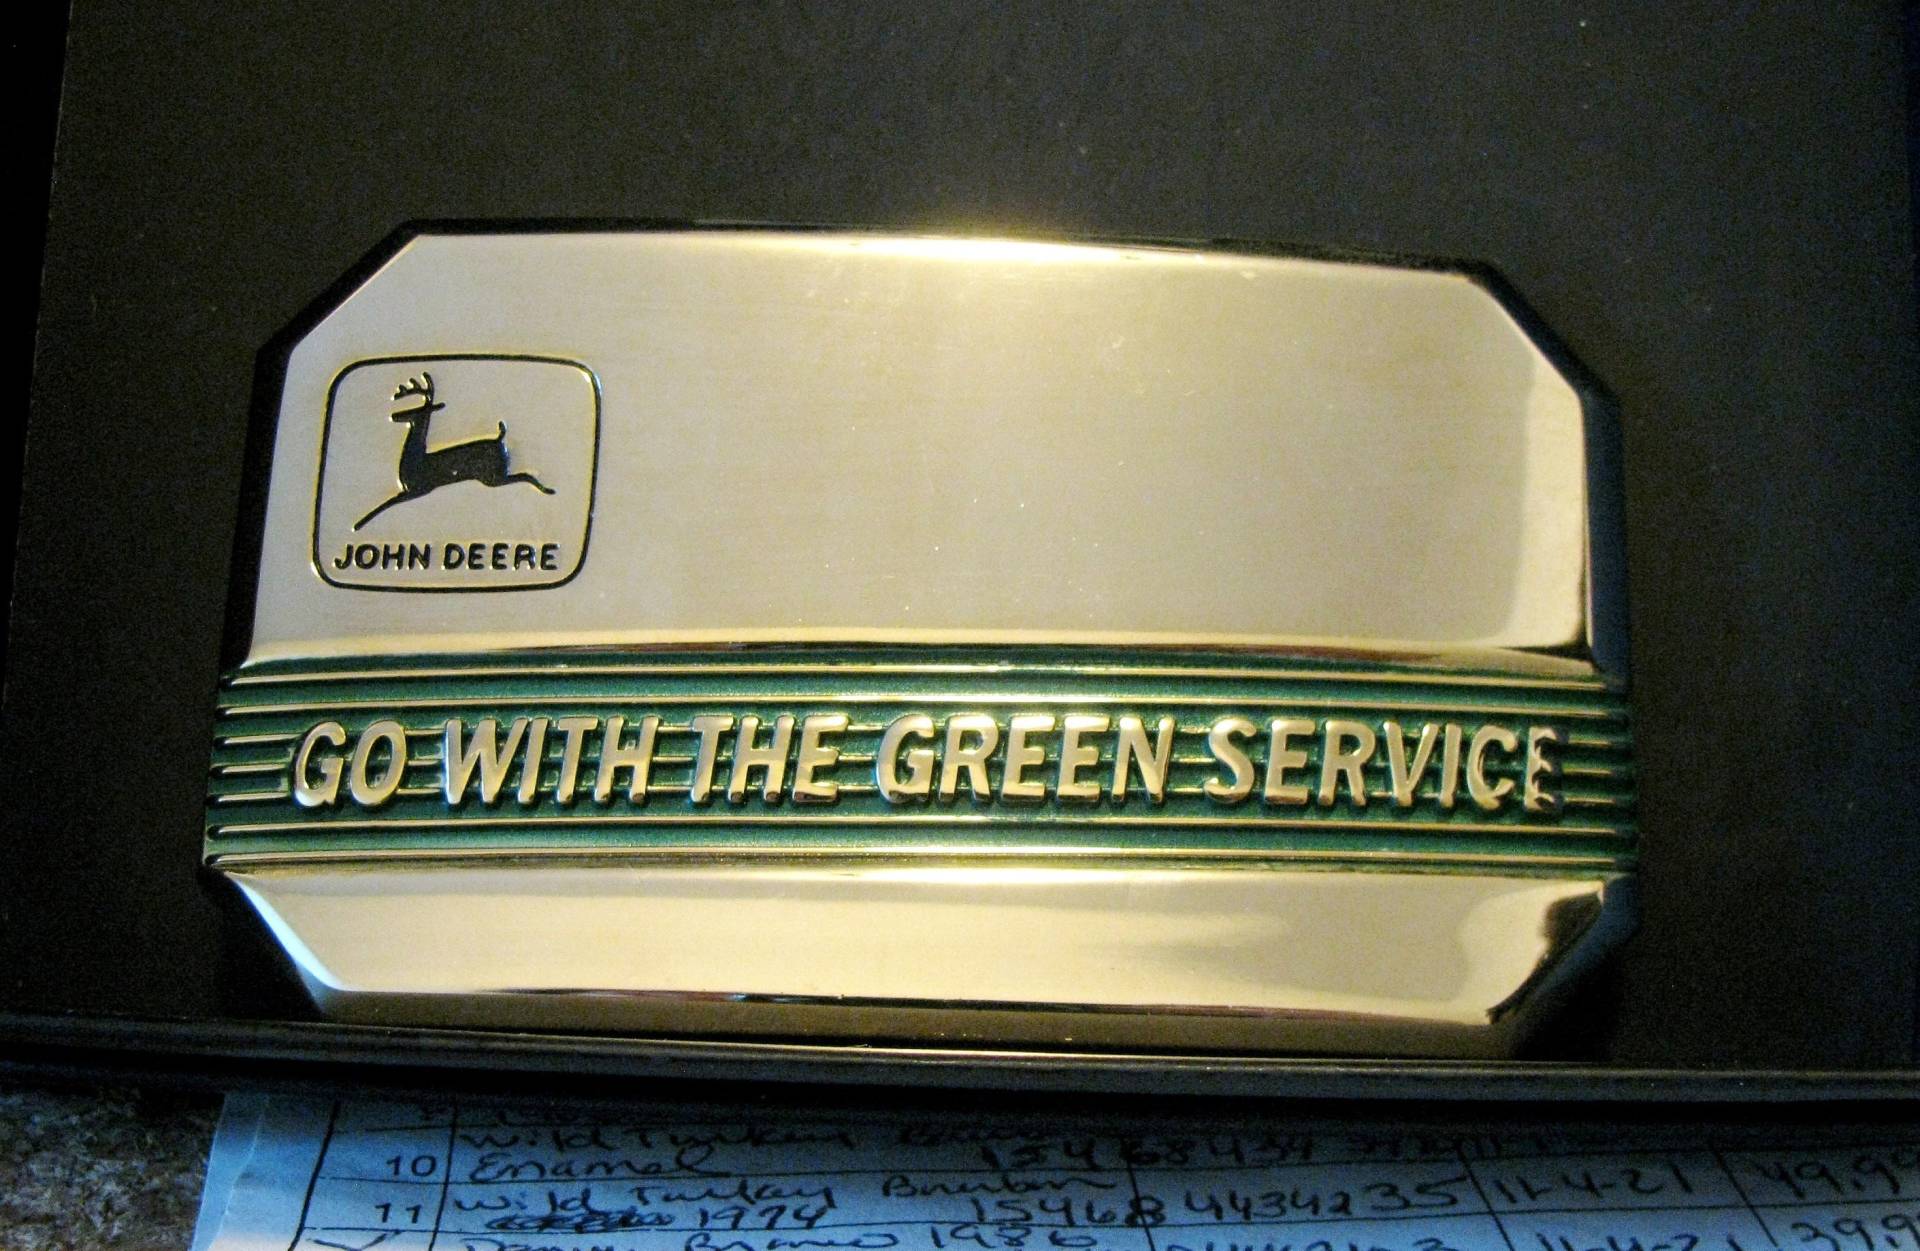 1990 John Deere 1968 2 Beinige Springende Hirsch Marke Logo Go With The Green Service Dress Gürtelschnalle Messing Grün Emaille Moline Illinois Jd von BeyerTractor